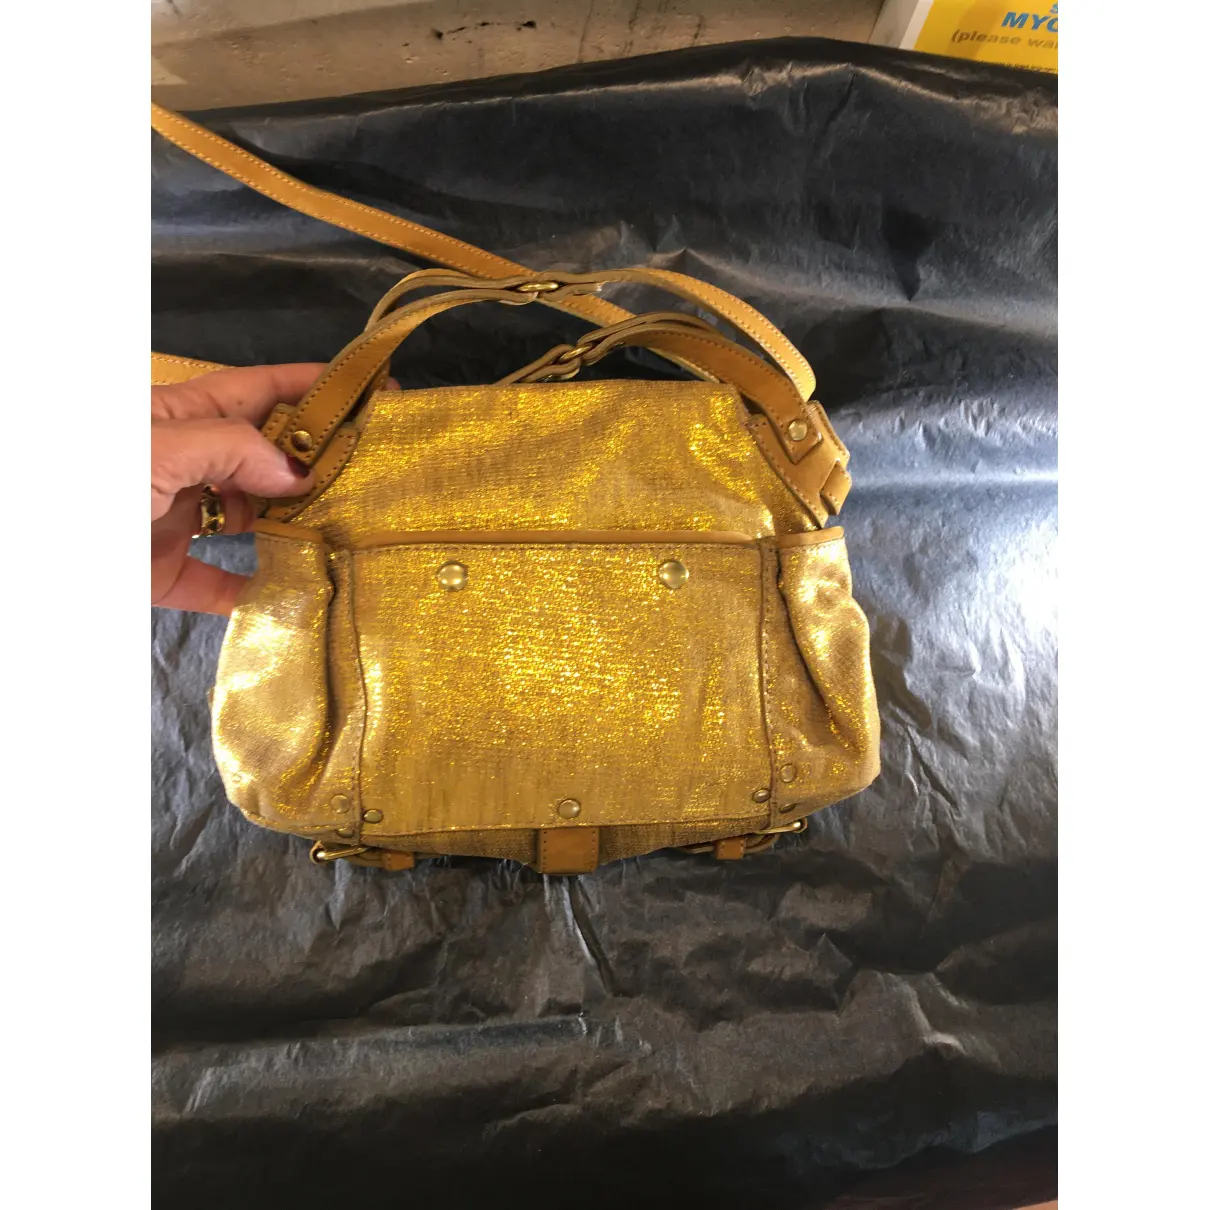 Buy Jerome Dreyfuss Twee leather handbag online